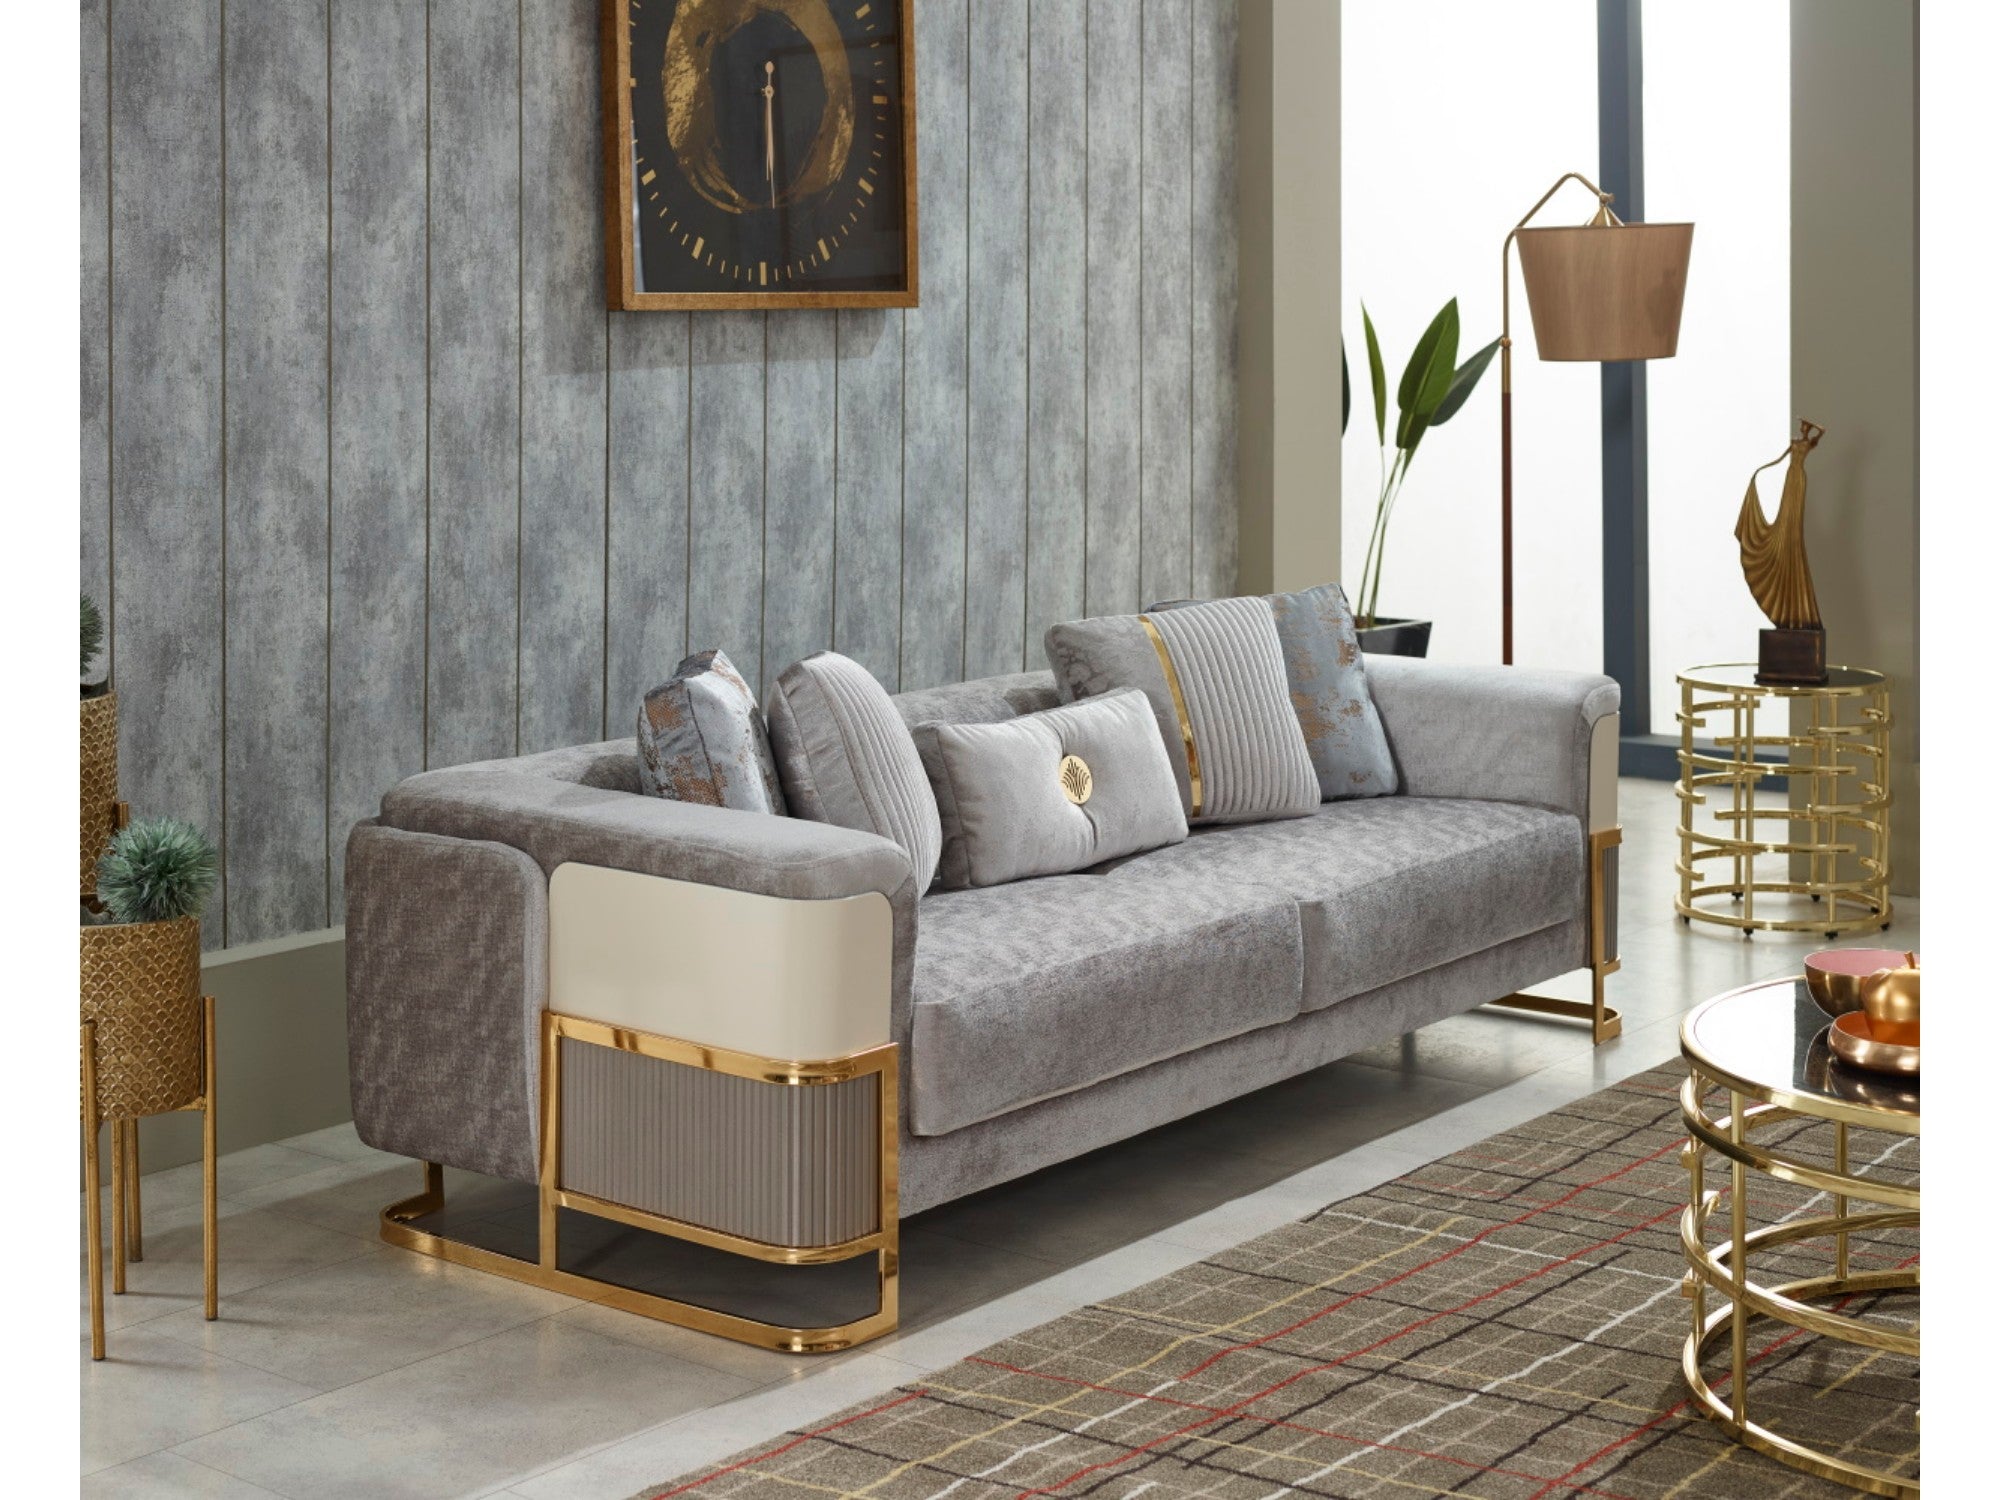 Galeria Stationary Livingroom Set (2 Sofa & 2 Chair)